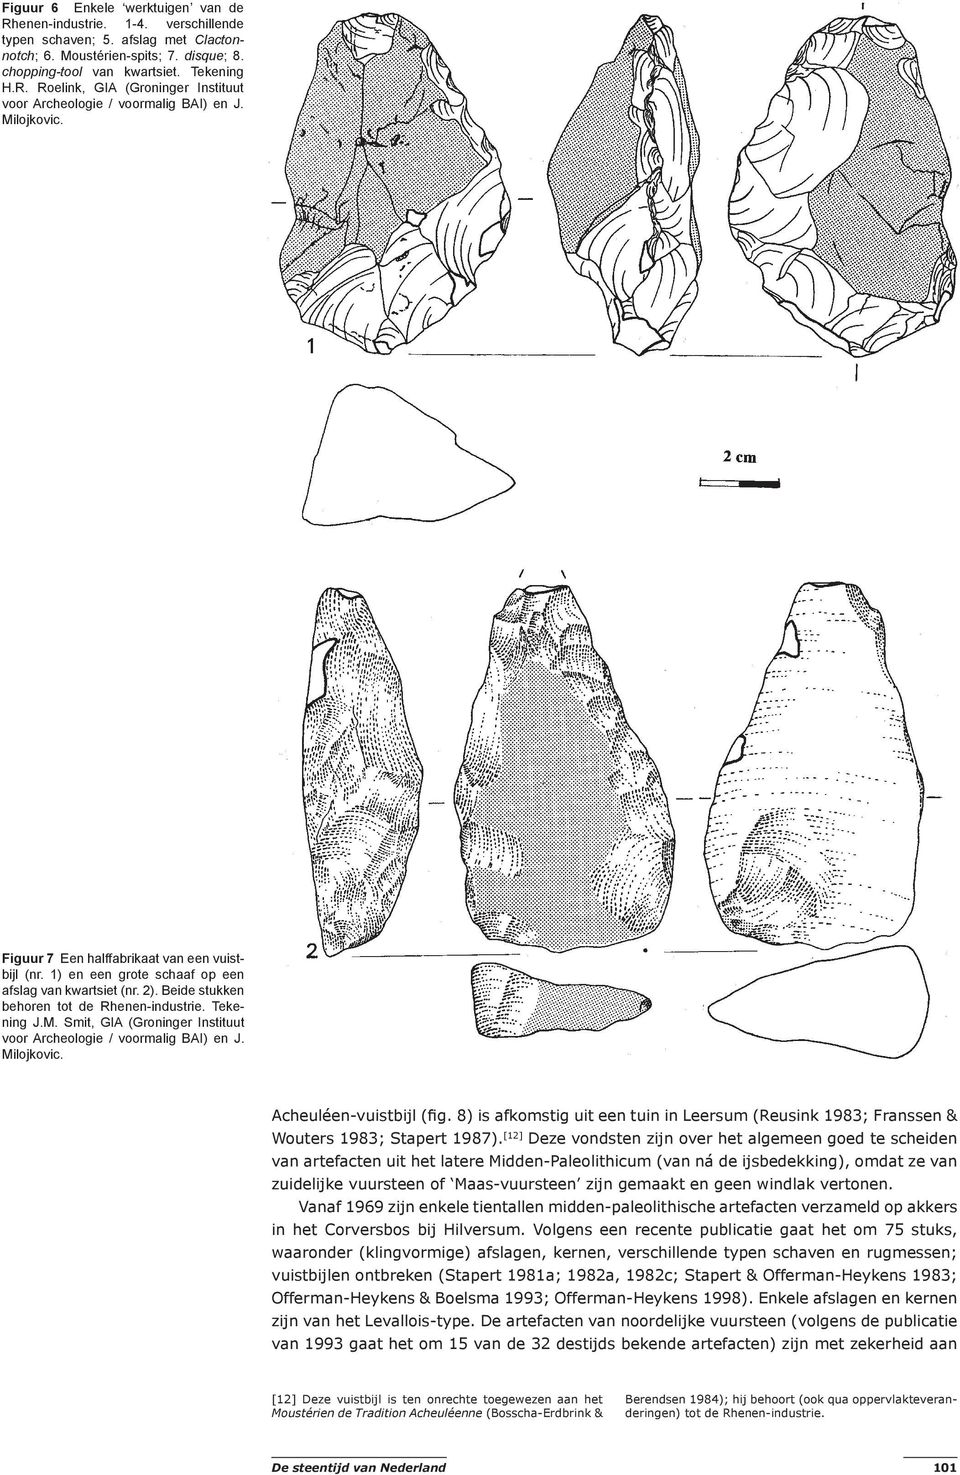 Milojkovic. Acheuléen-vuistbijl (fig. 8) is afkomstig uit een tuin in Leersum (Reusink 1983; Franssen & Wouters 1983; Stapert 1987).